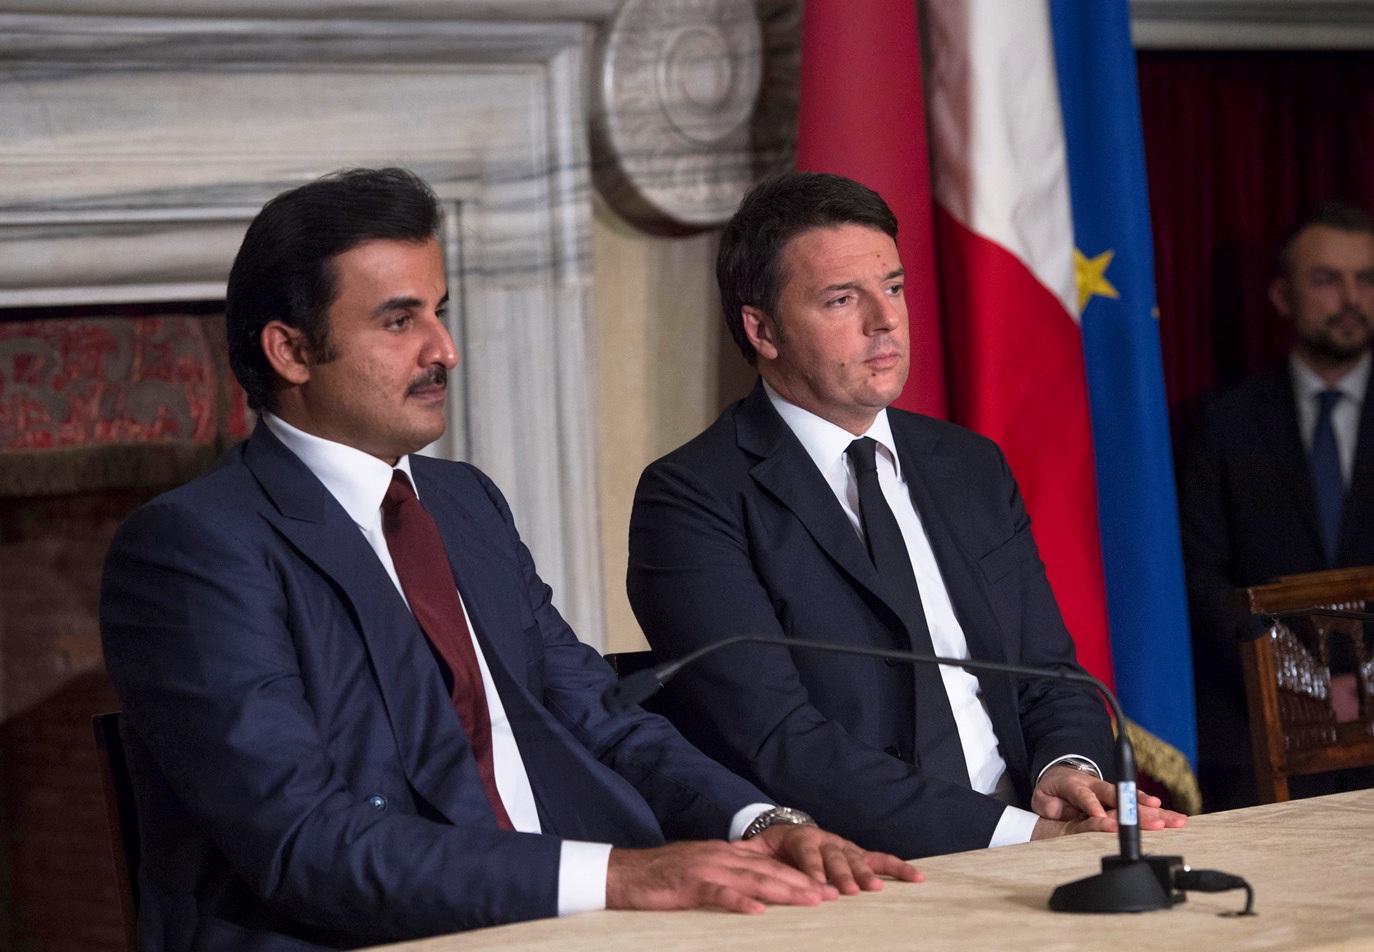 Qatar's Amir Sheikh Tamim bin Hamad Al-Thani and Italian Prime Minister Matteo Renzi